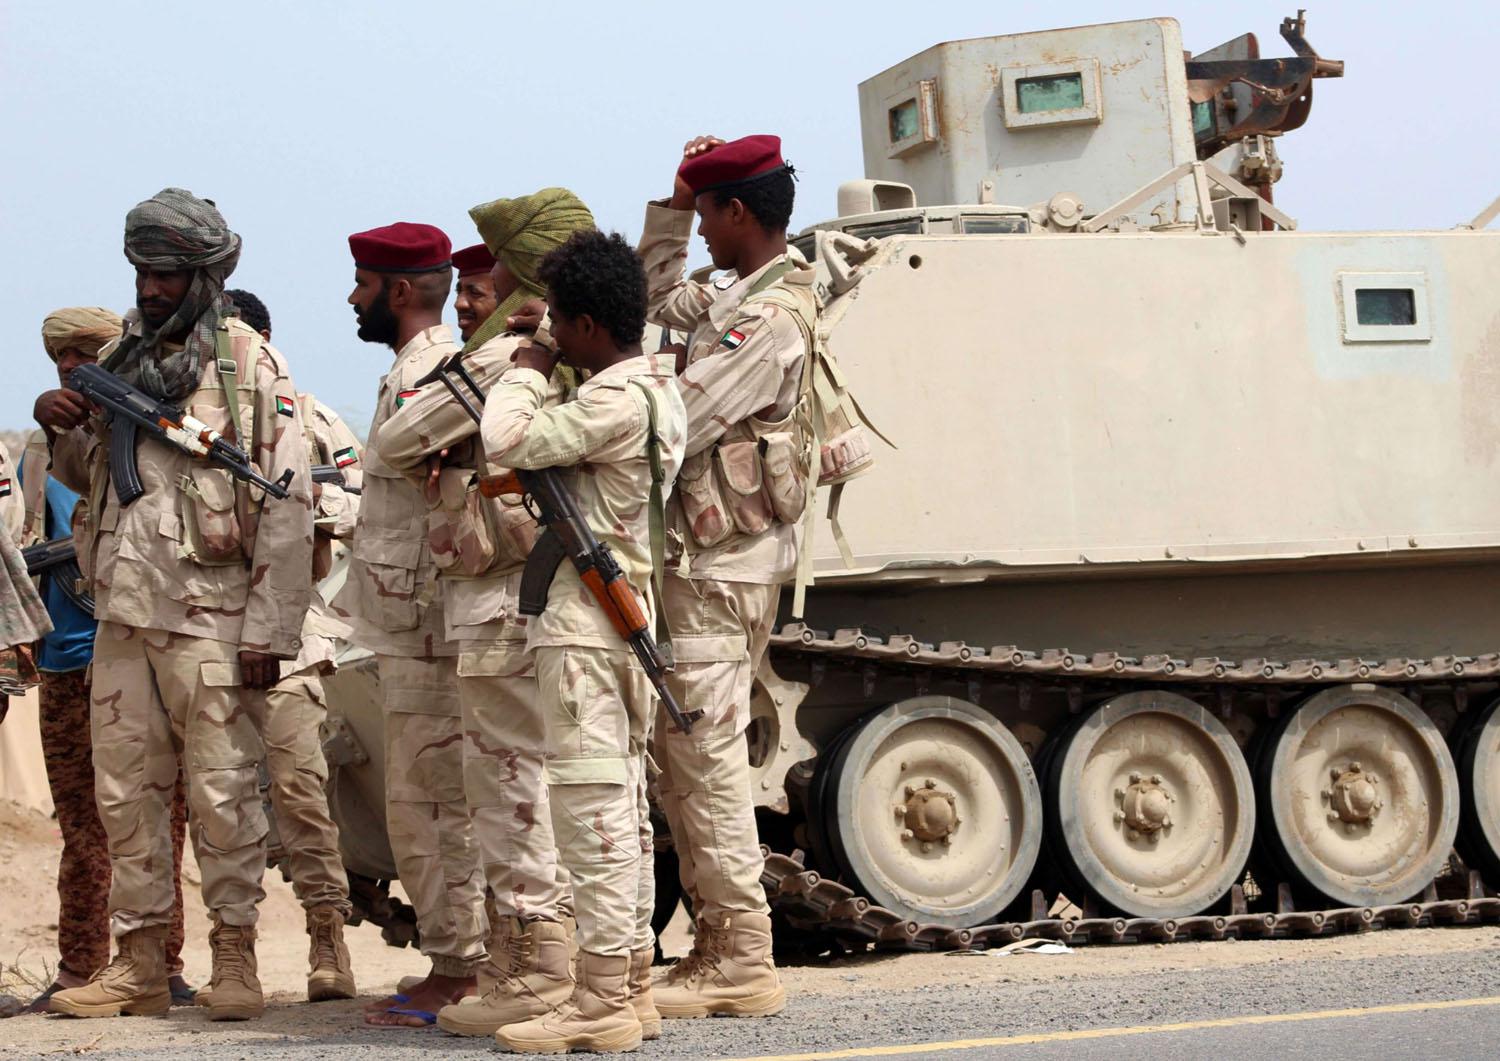 القوات السودانية موجودة في اليمن منذ اربع سنوات